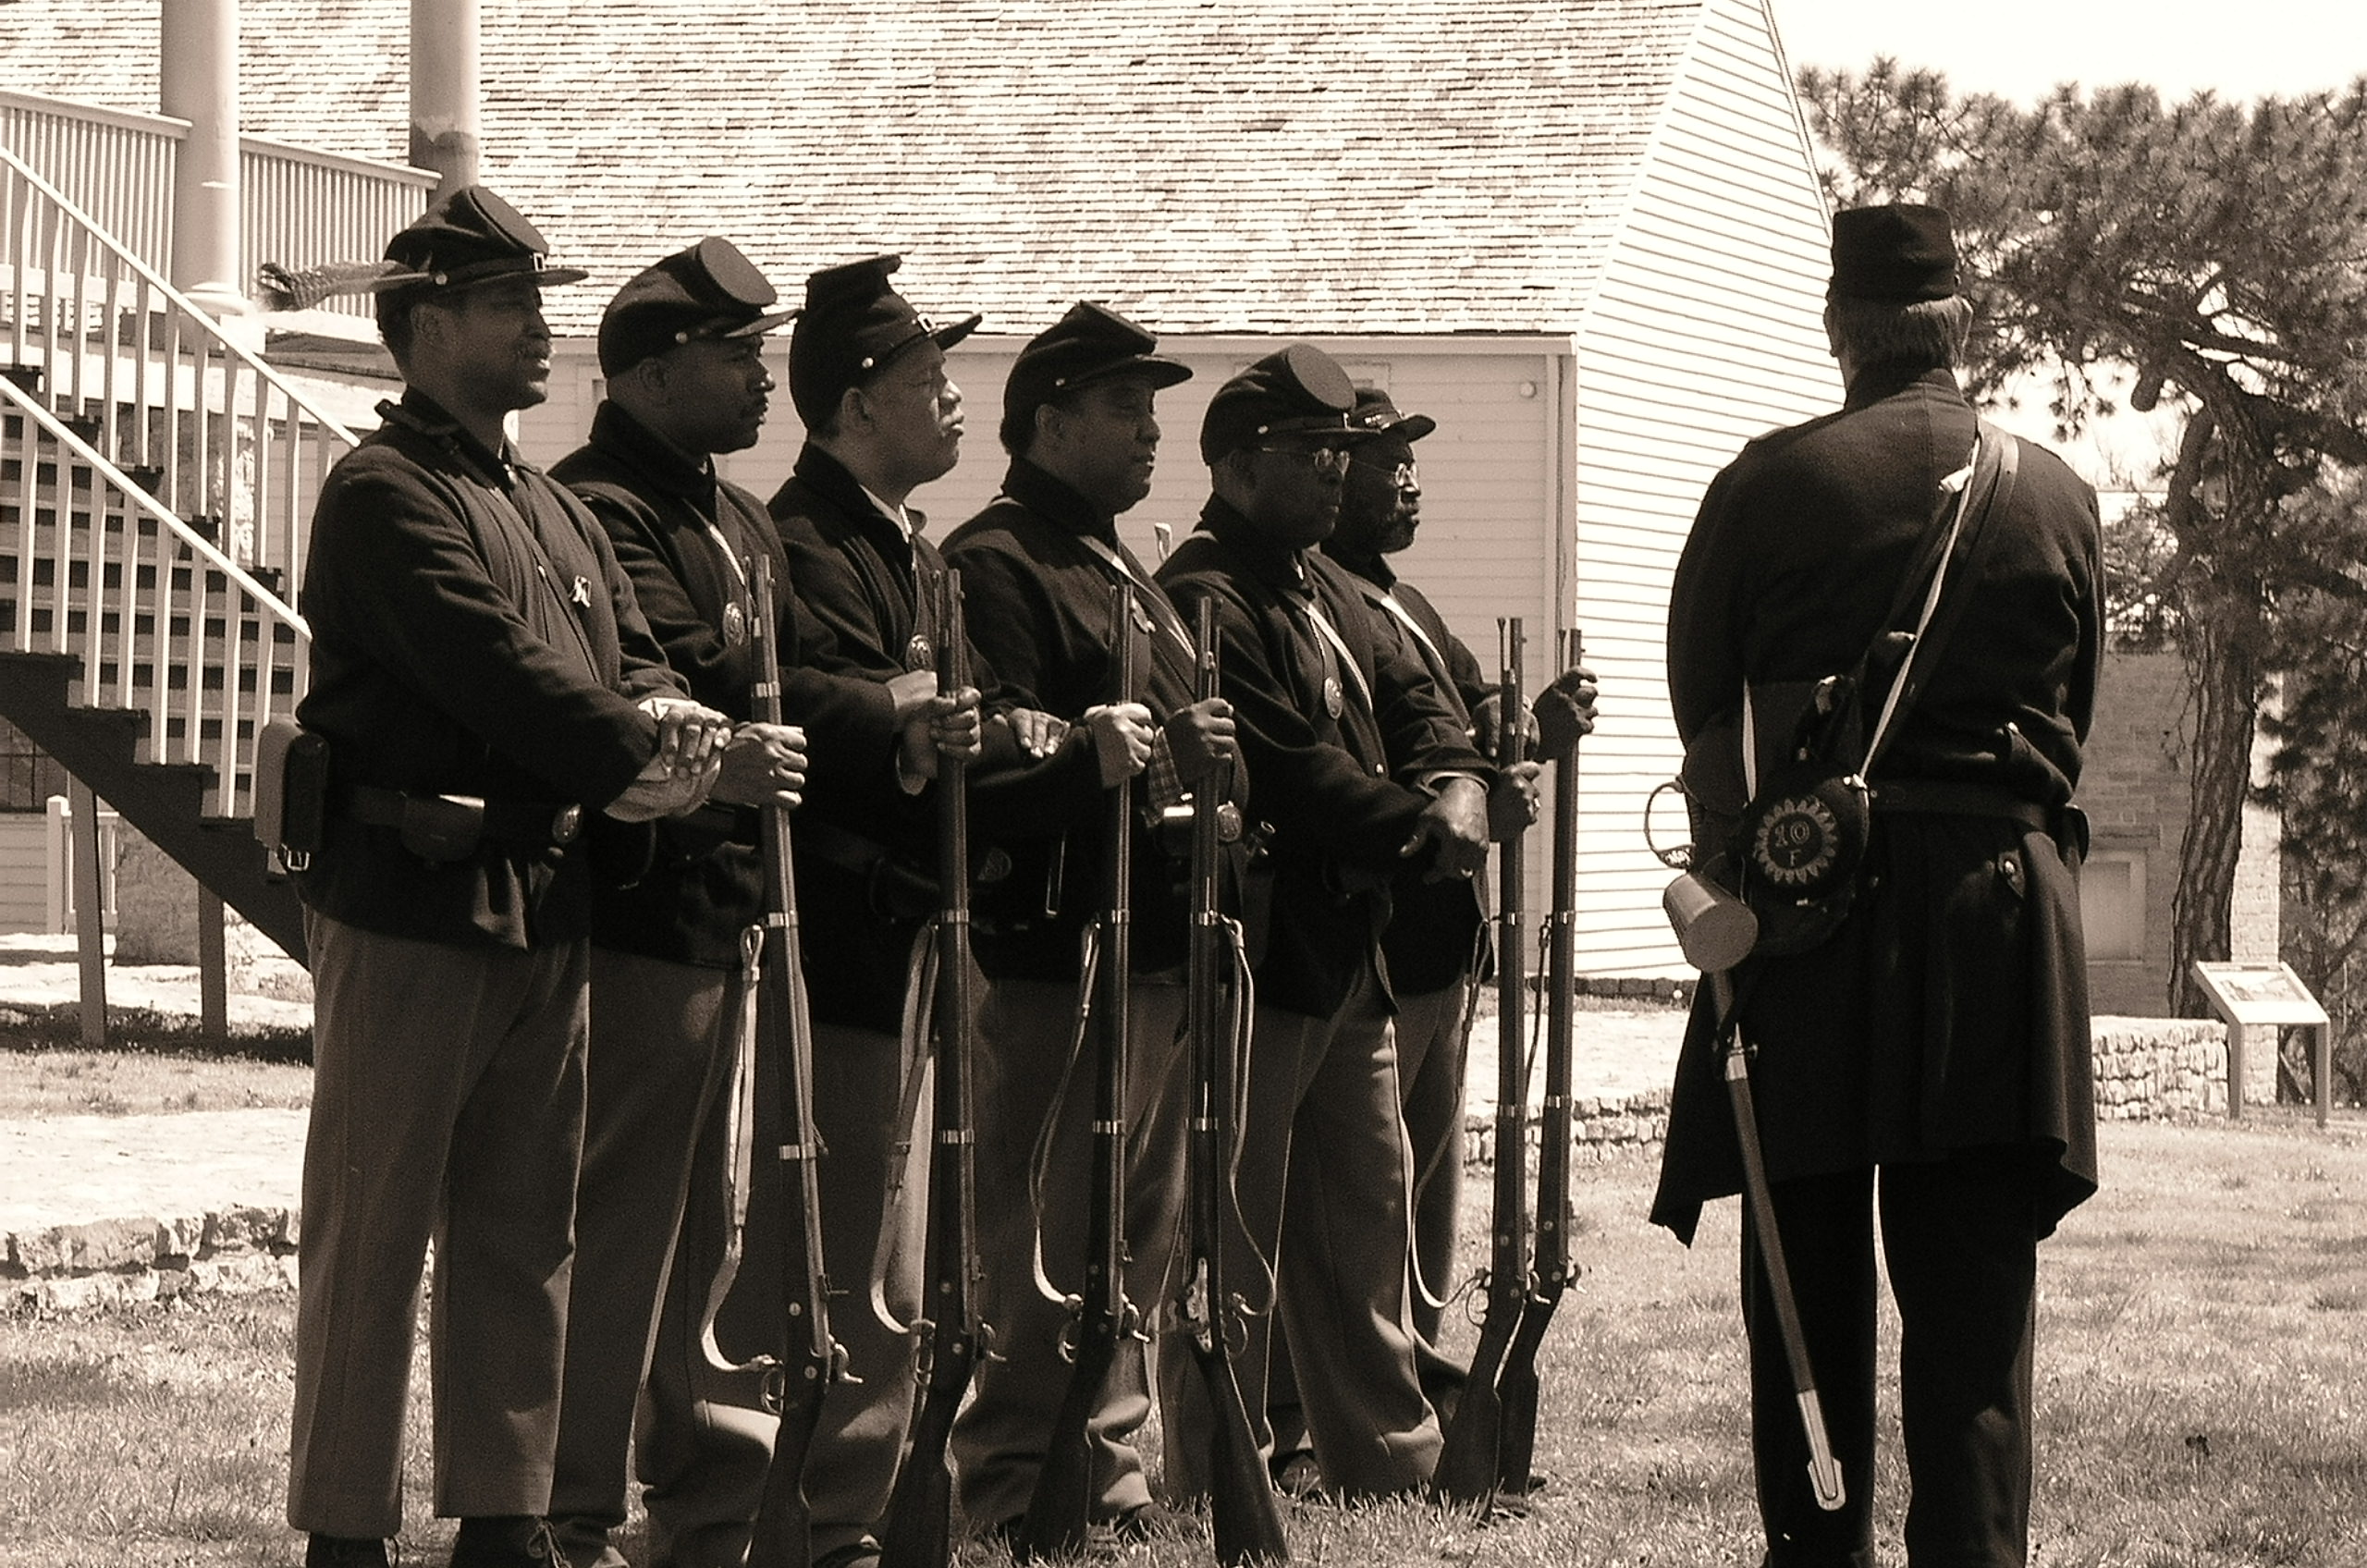 (Soldats du 1st Kansas Colored Volunteer Infantry Regiment, photo NPS, www.nps.gov)